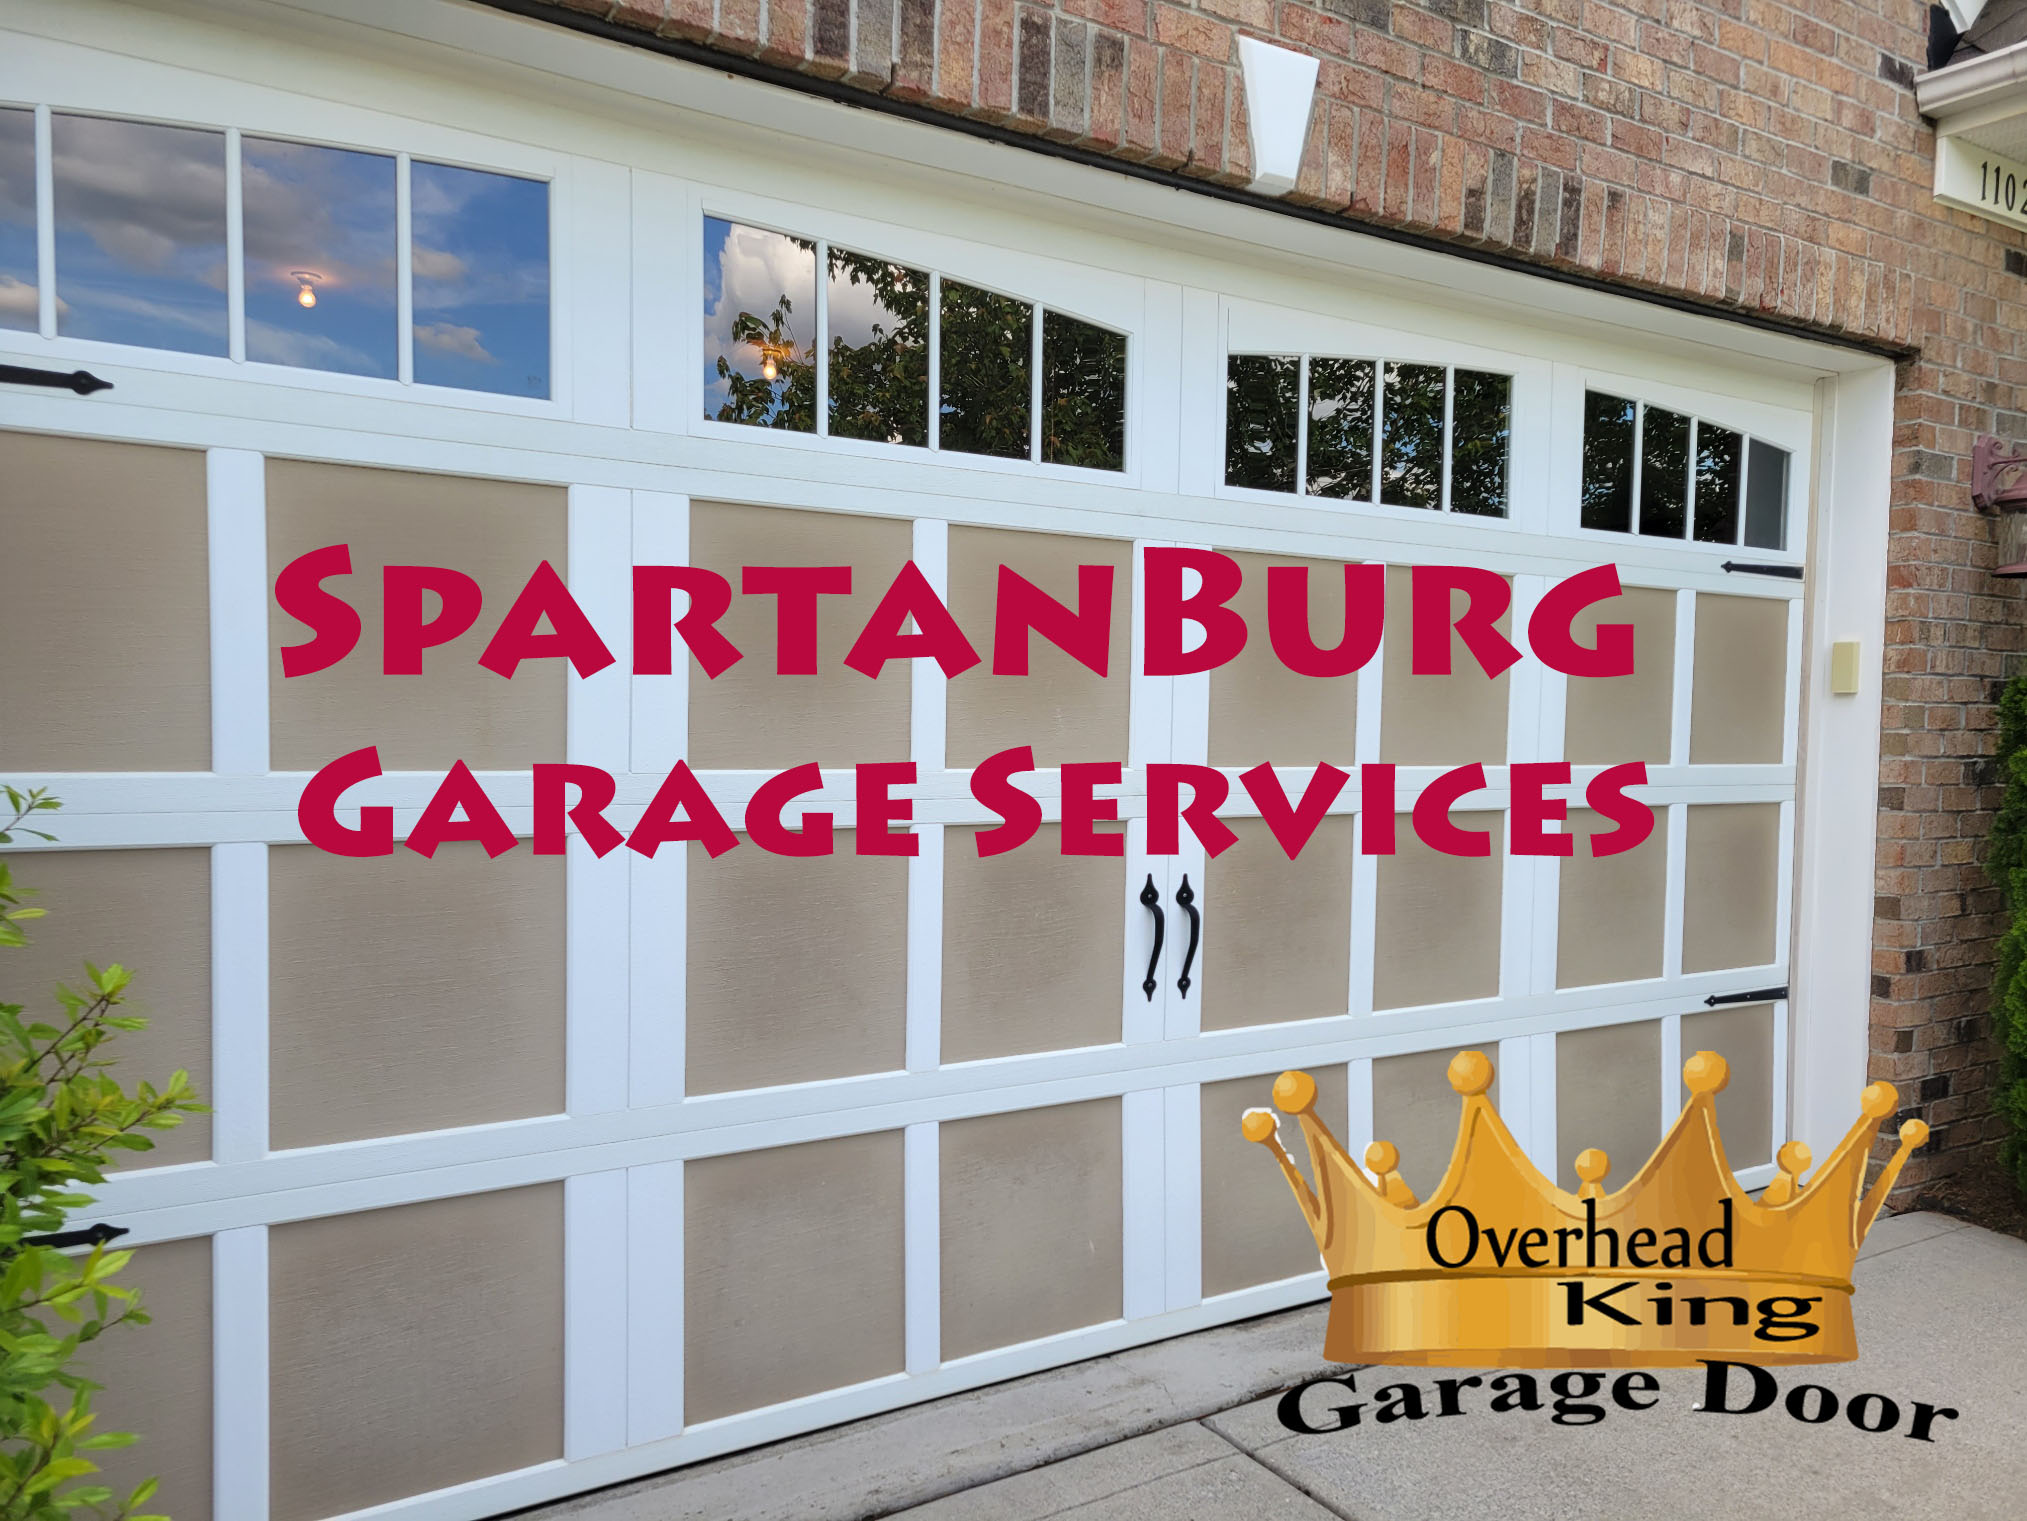 South Carolina garage door experts